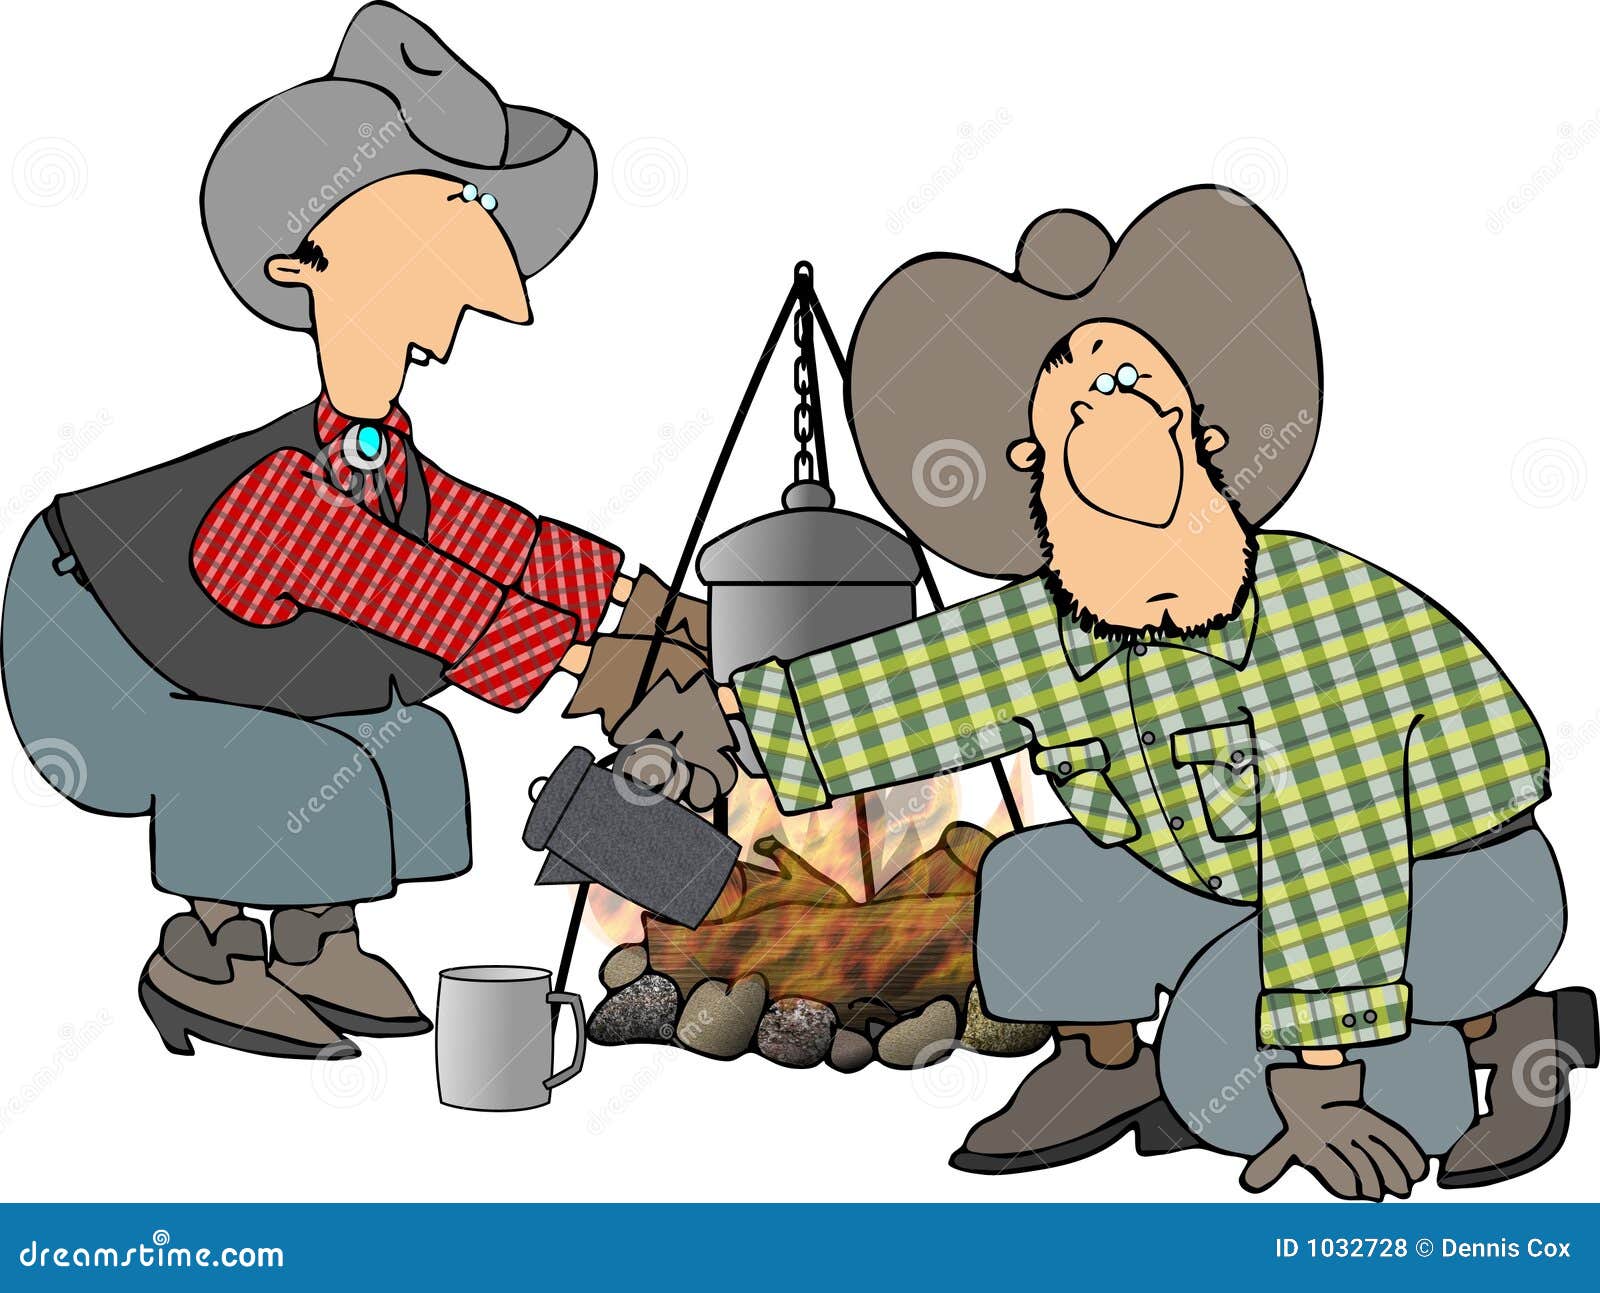 Lagerfeuerjungen. Diese Abbildung stellt zwei Cowboys durch ein Lagerfeuer bildlich dar.